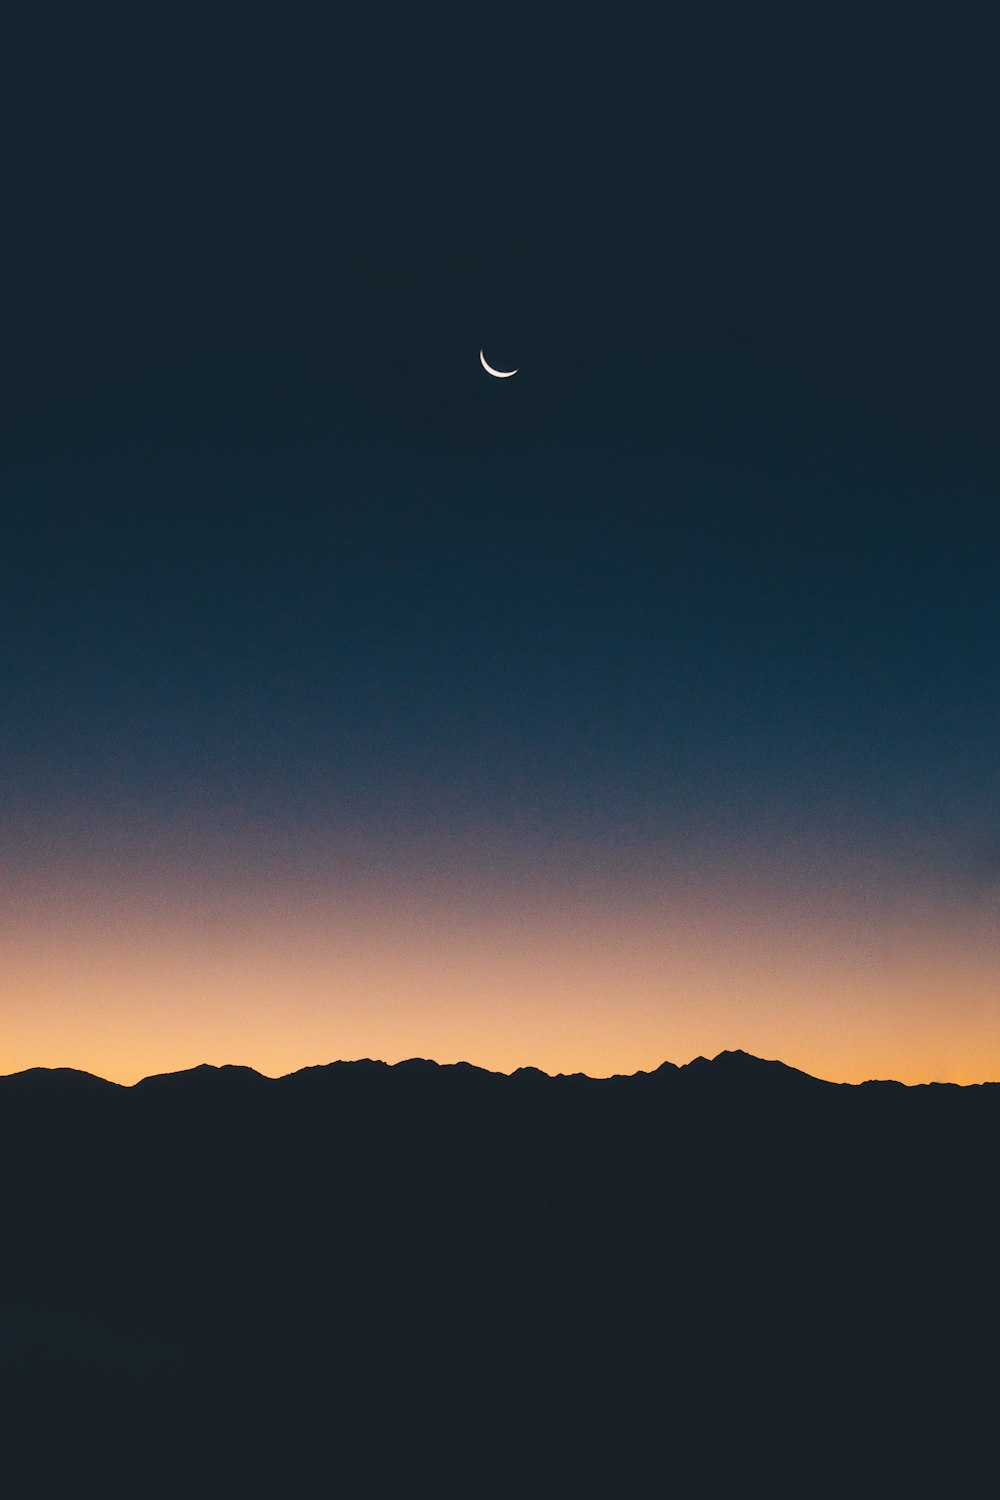 Photographie de silhouette de la terre sous un croissant de lune pendant l’heure dorée